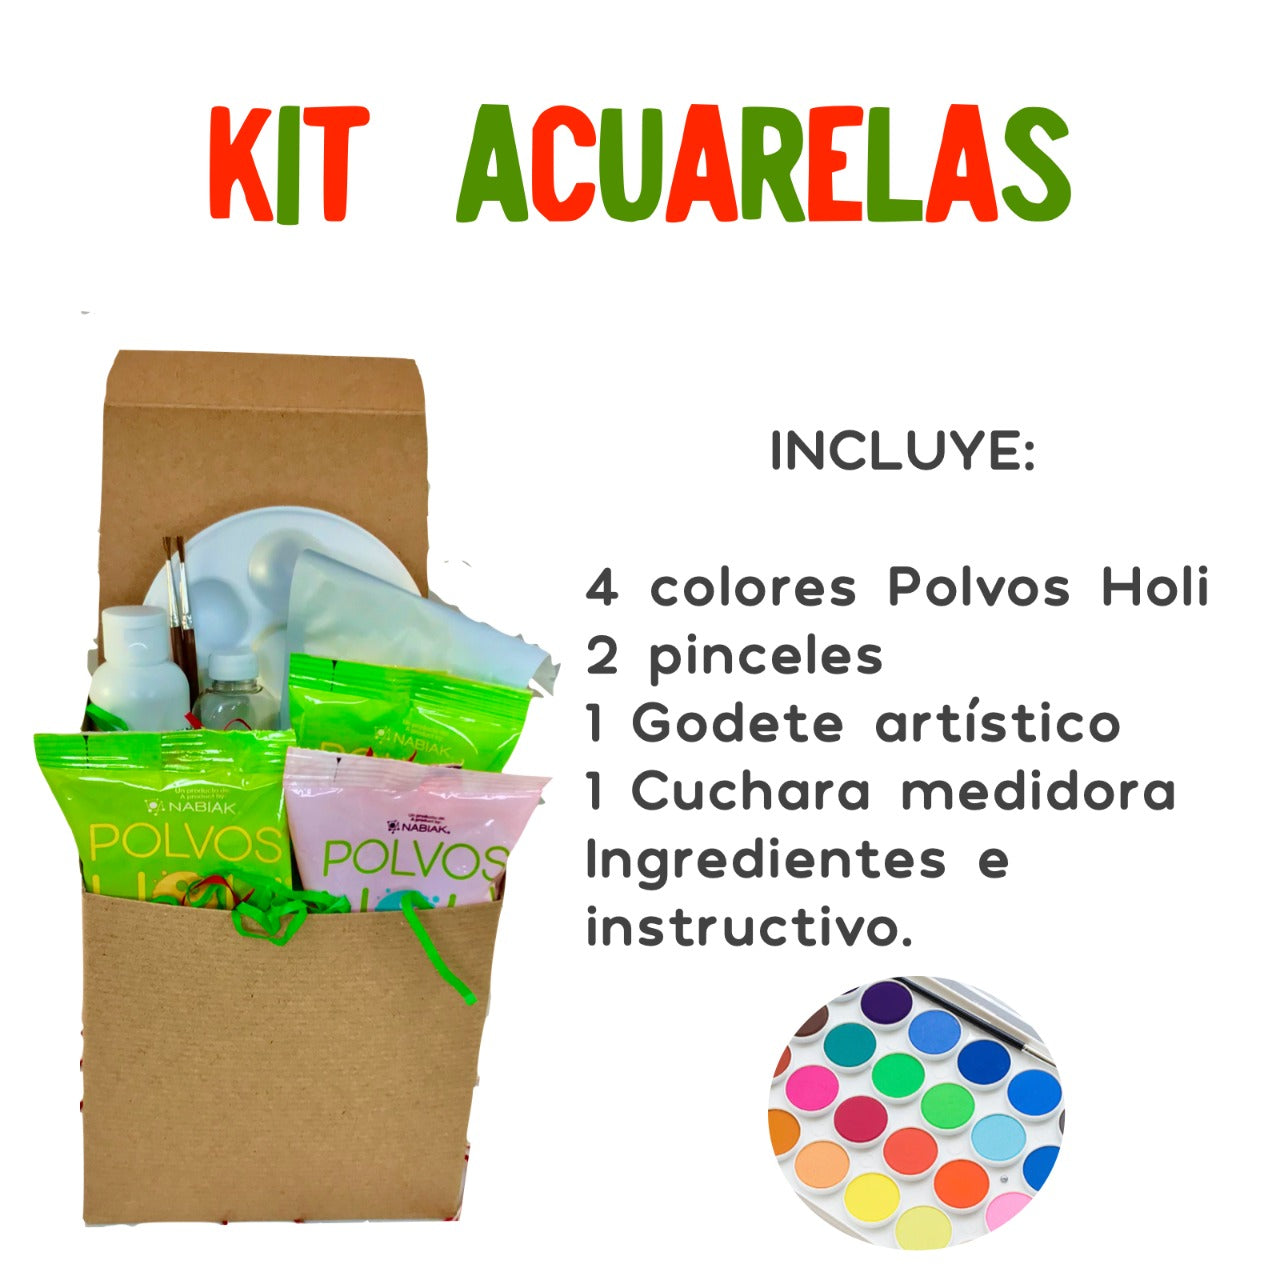 Kit Manualidades - Acuarelas (1 caja) – The Confetti Party